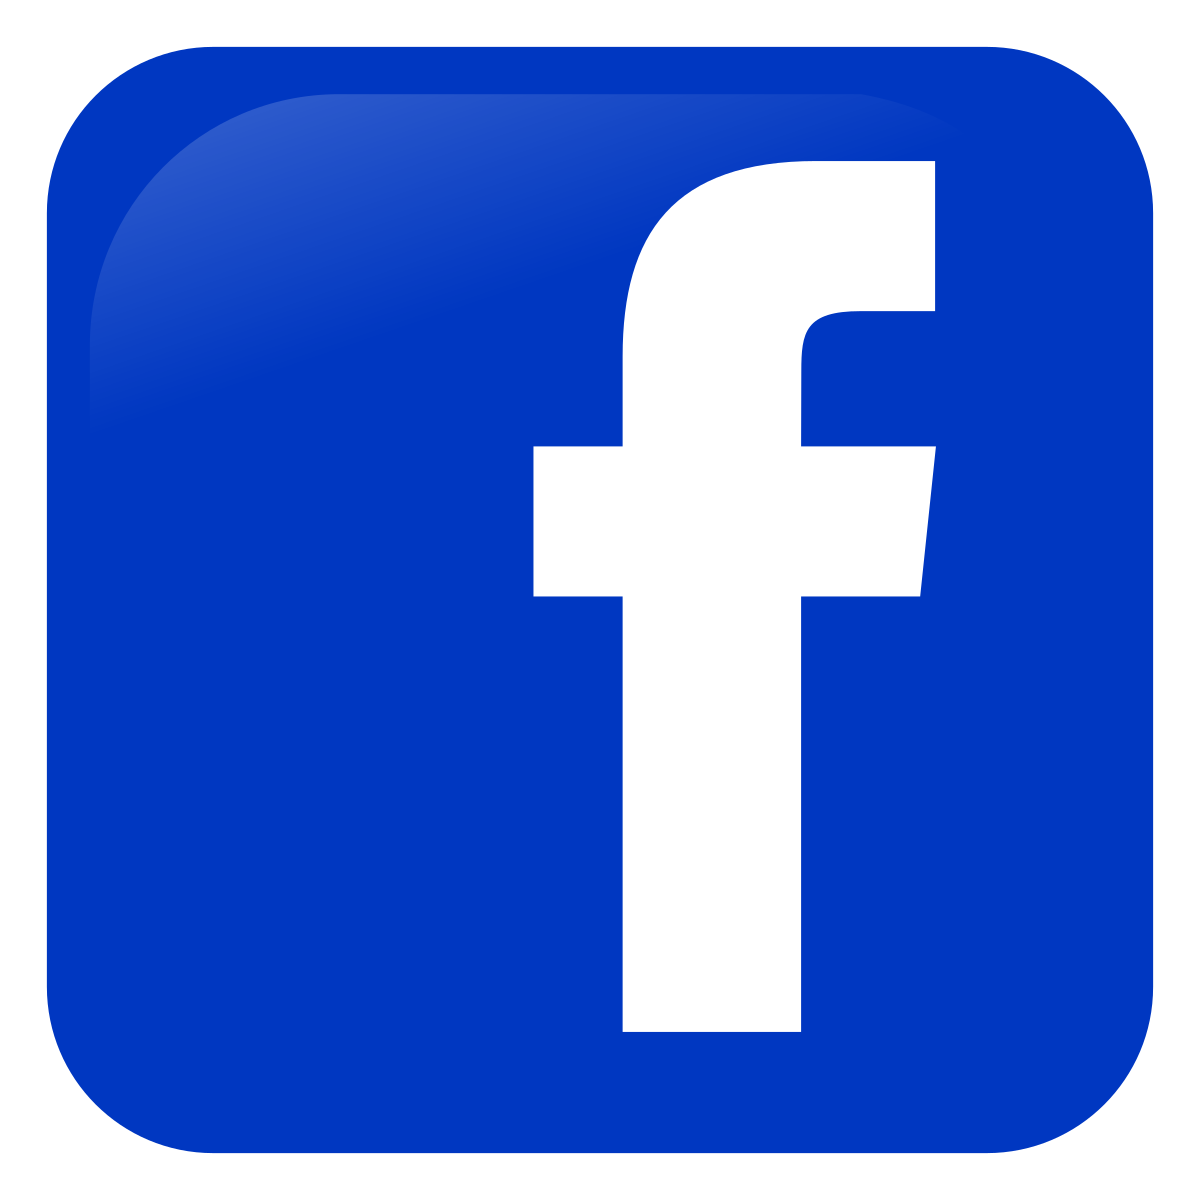 Facebook Miitelaltermarkt StauferSpektakel im StauferWald